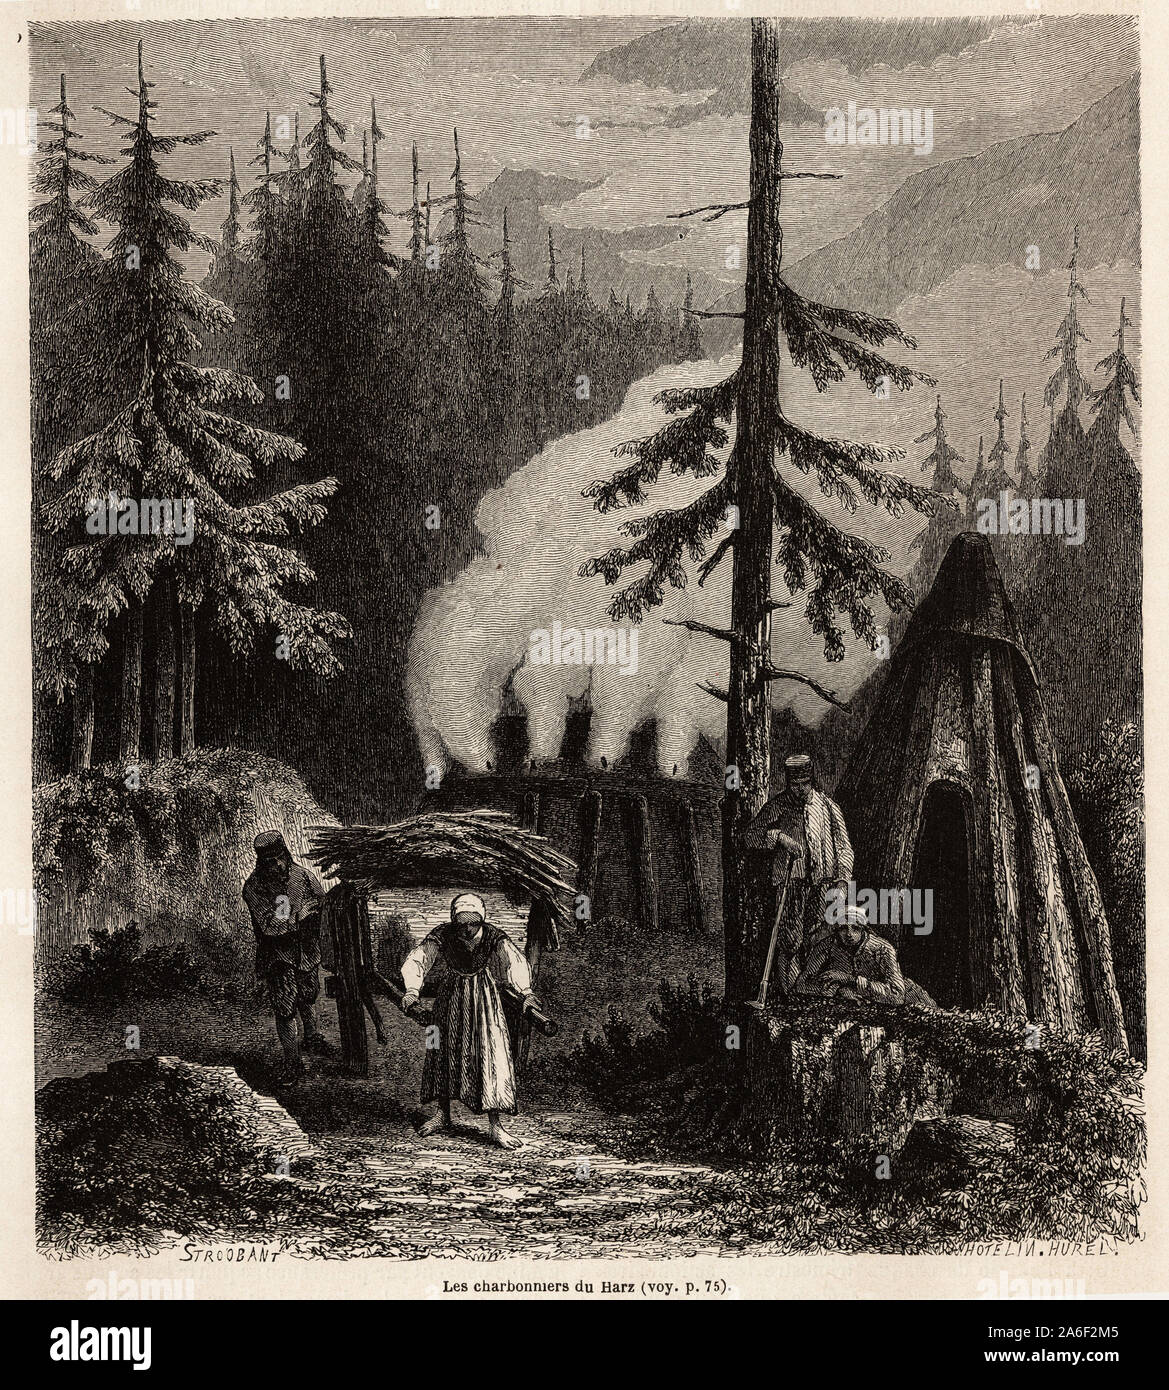 Les charbonniers du Harz, massif forestier allemand, dessin de Stroobant, pour illustrer une visite dans les mines du Harz, en 1862, par Adolphe Carno Stock Photo